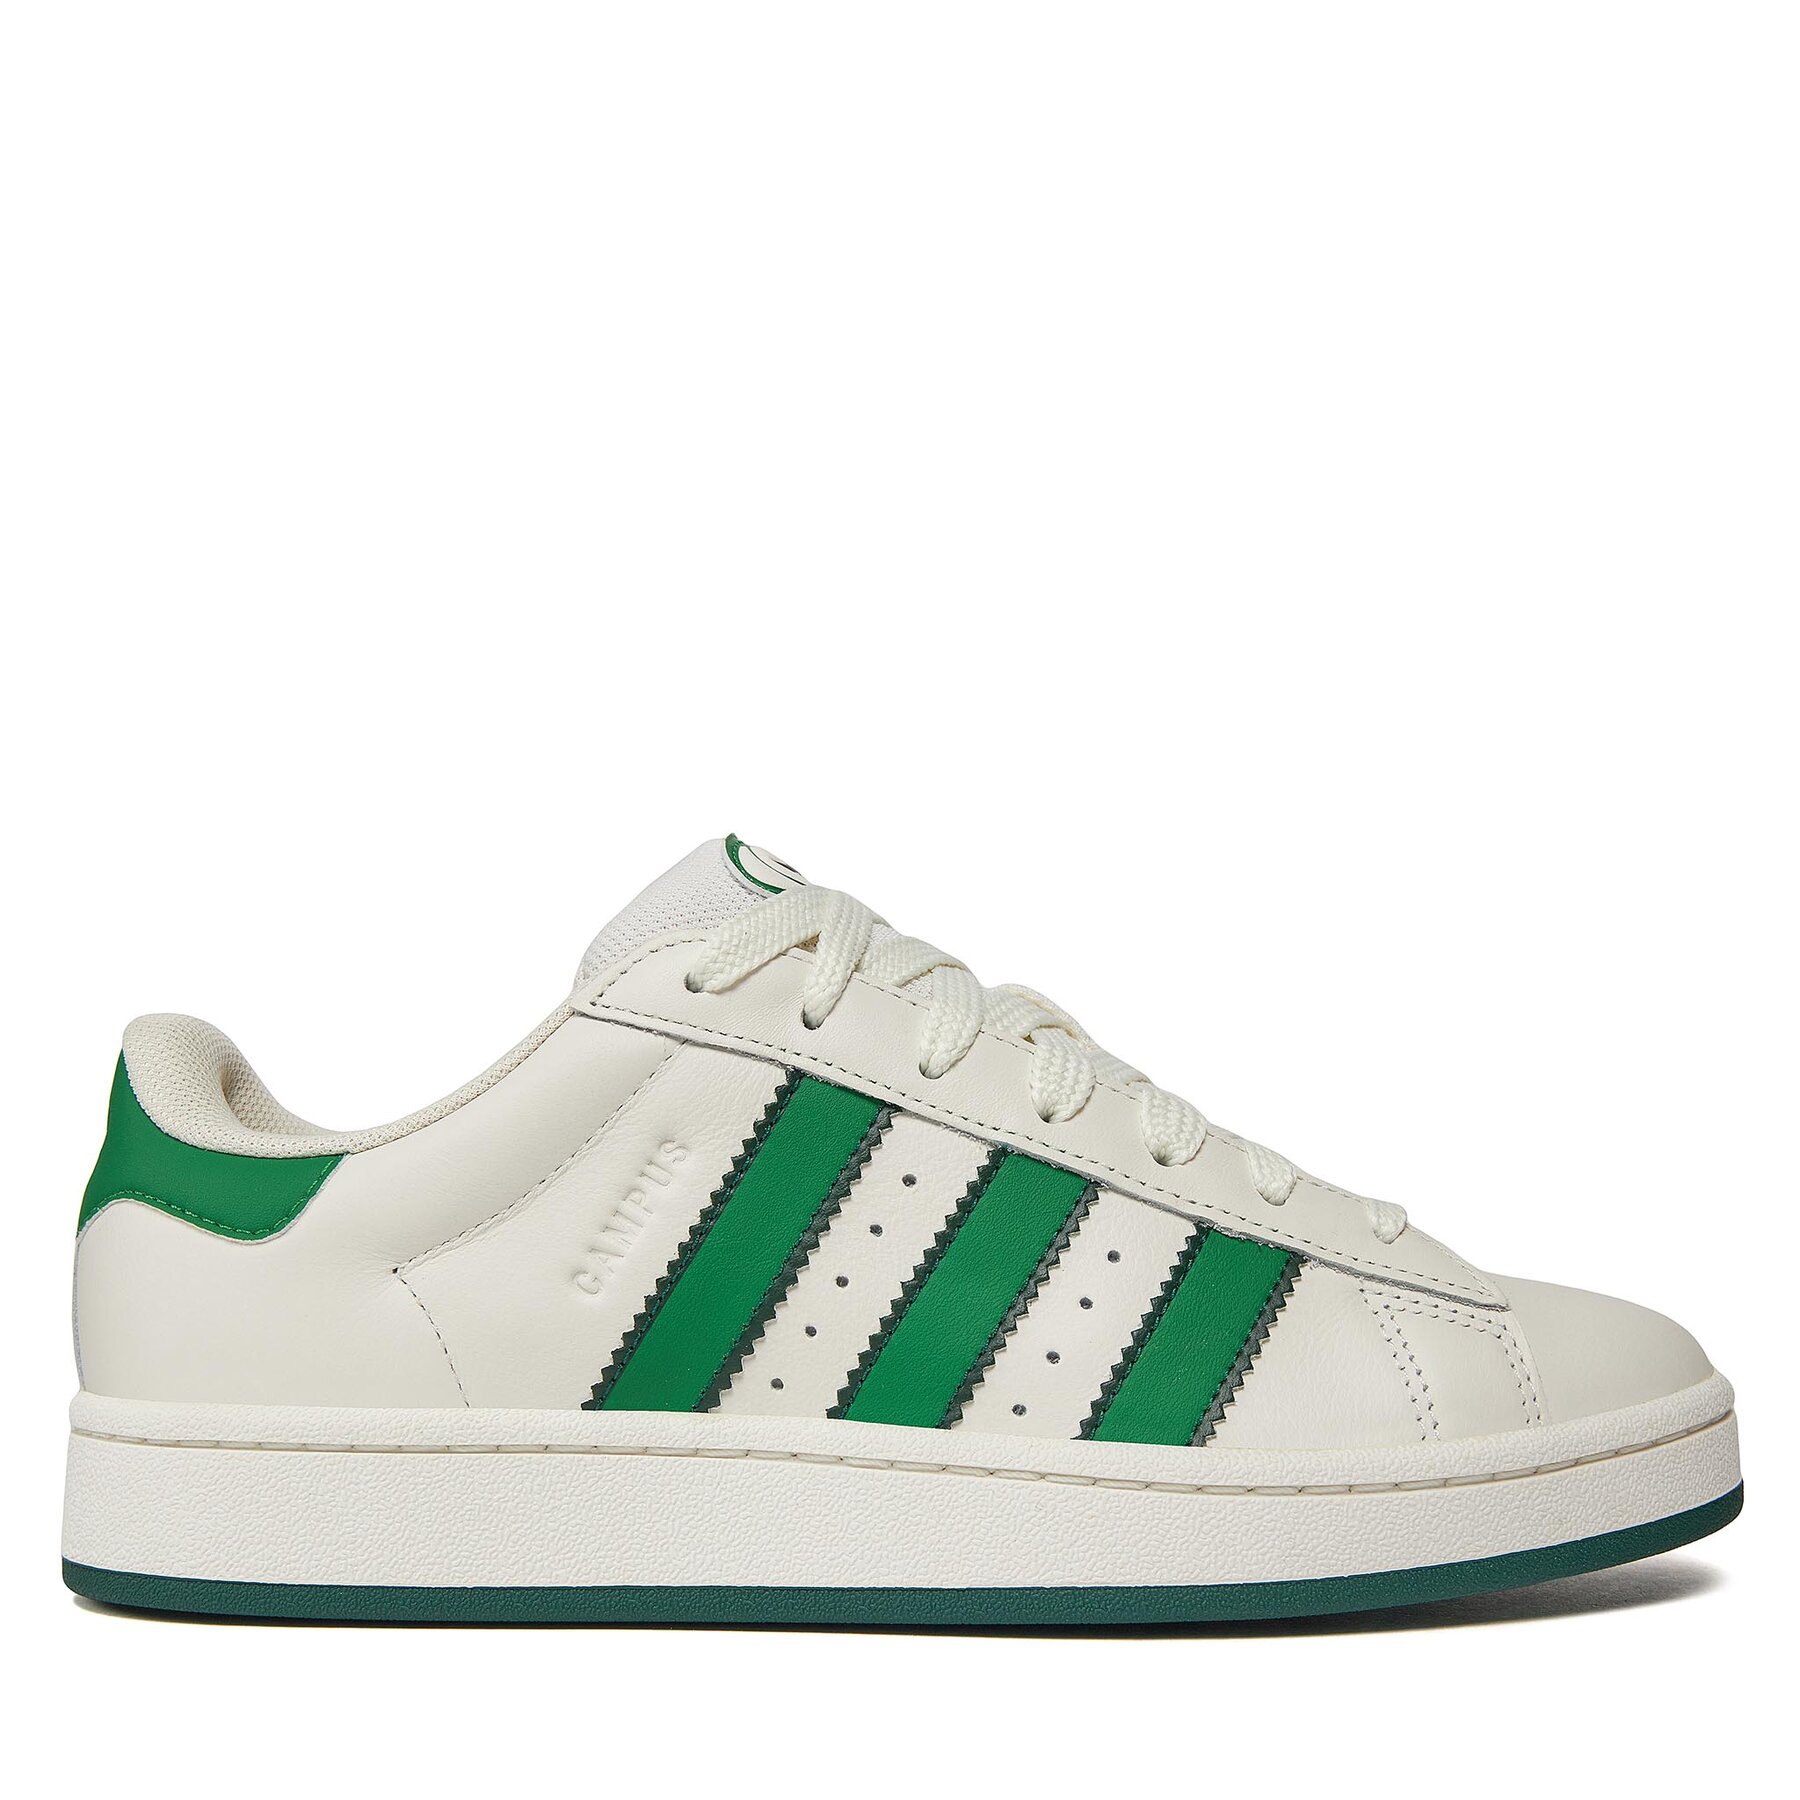 Comprar en oferta Adidas Campus 00s white/green owhite